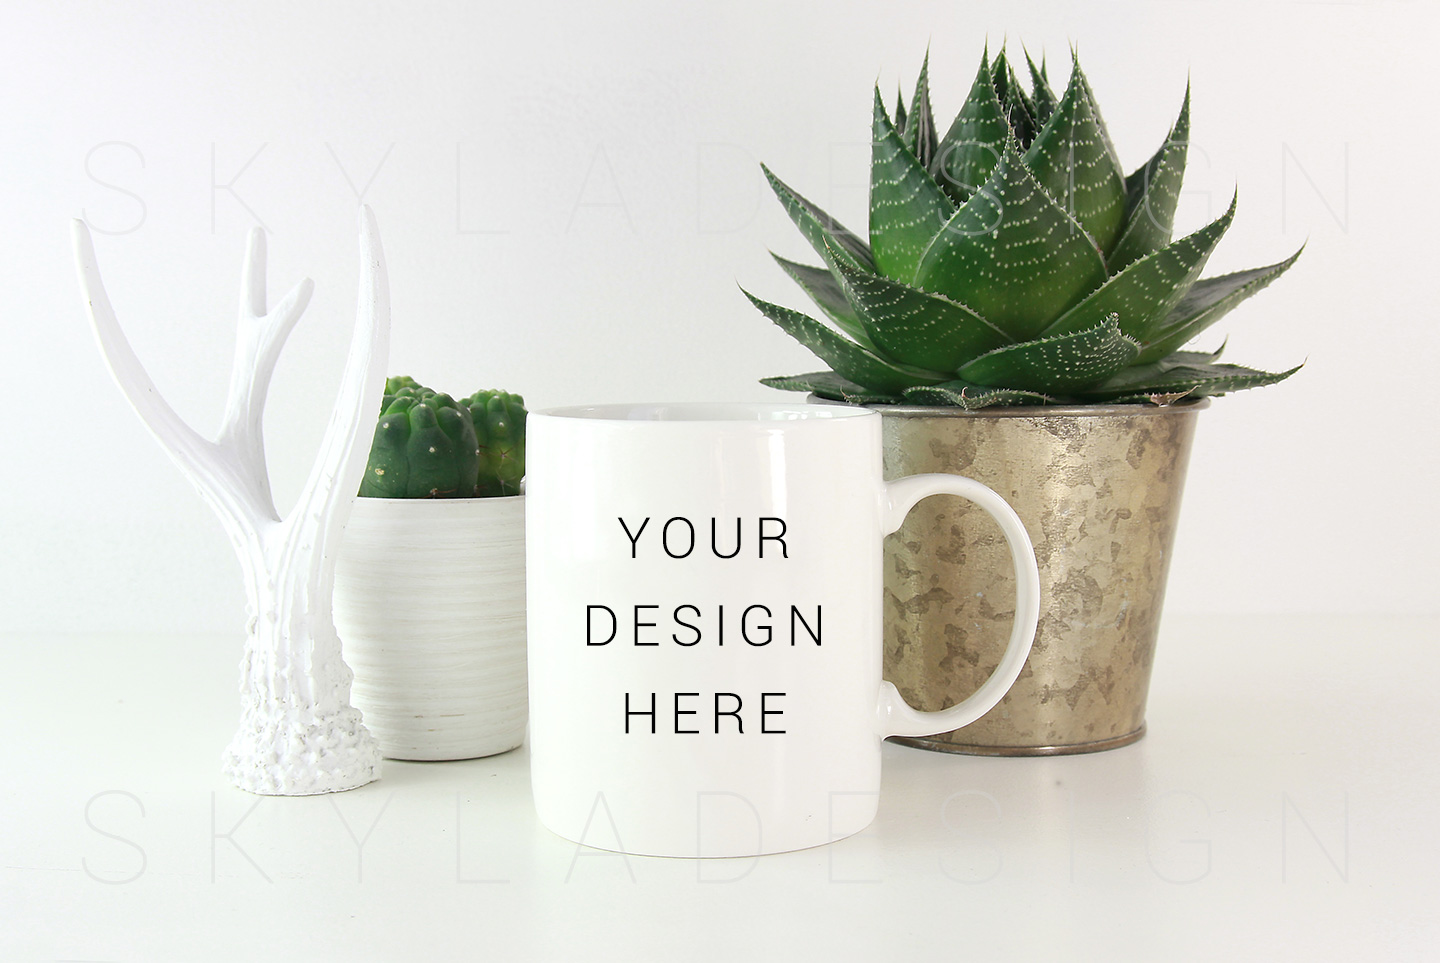 Download White coffee mug mockup image with plants